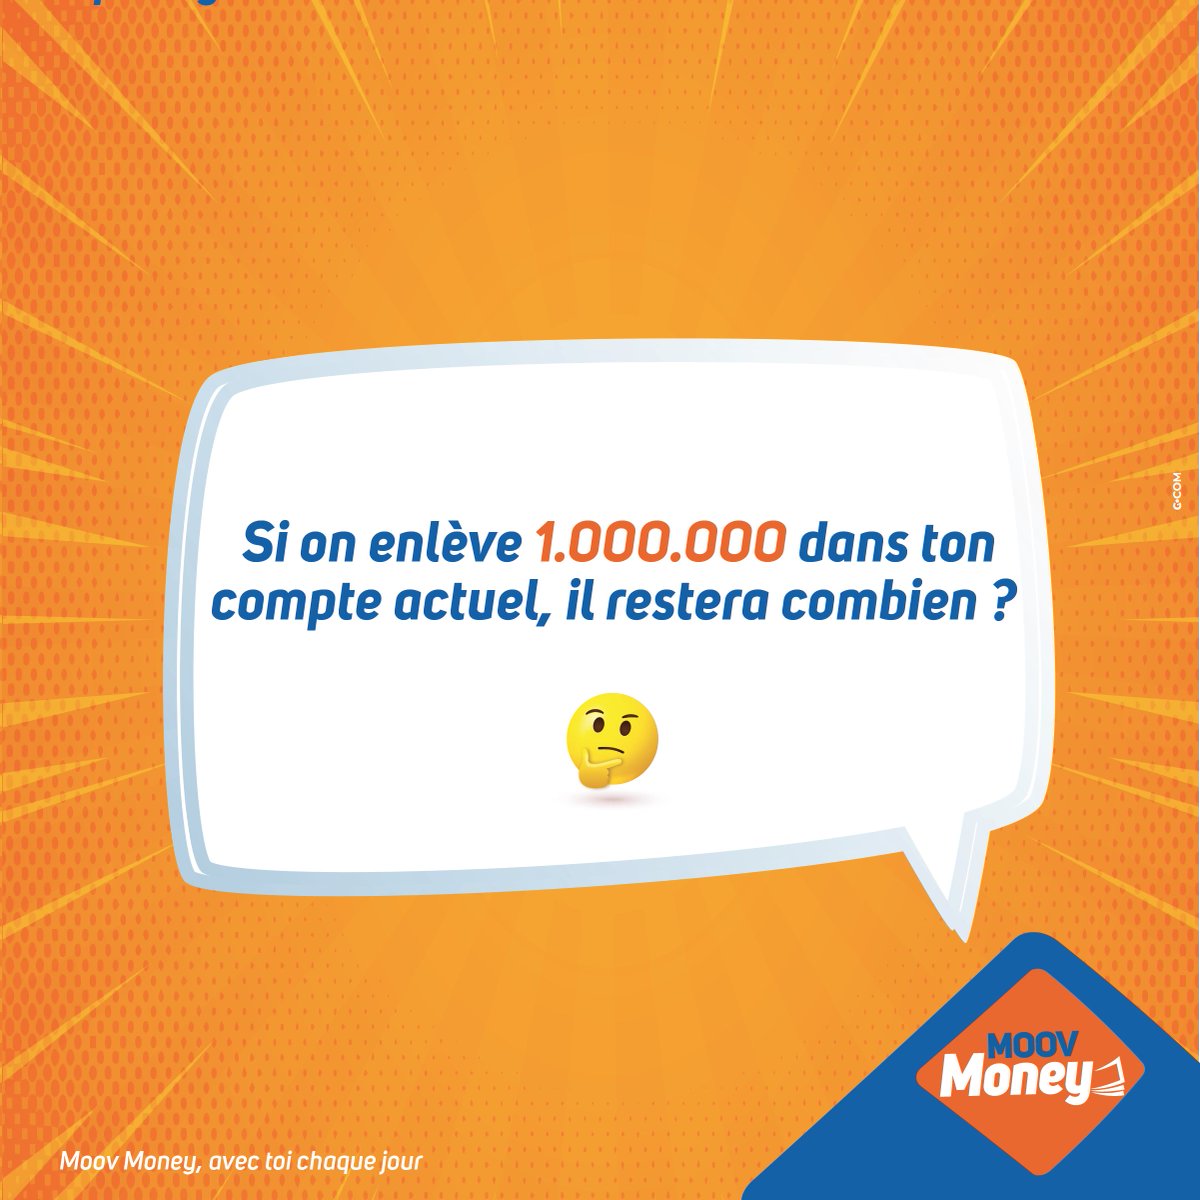 Imagine seulement qu'on pique 1000.000 de ton compte Moov Money, il va rester combien ?

#MoovMoney
#AvecToiChaqueJour